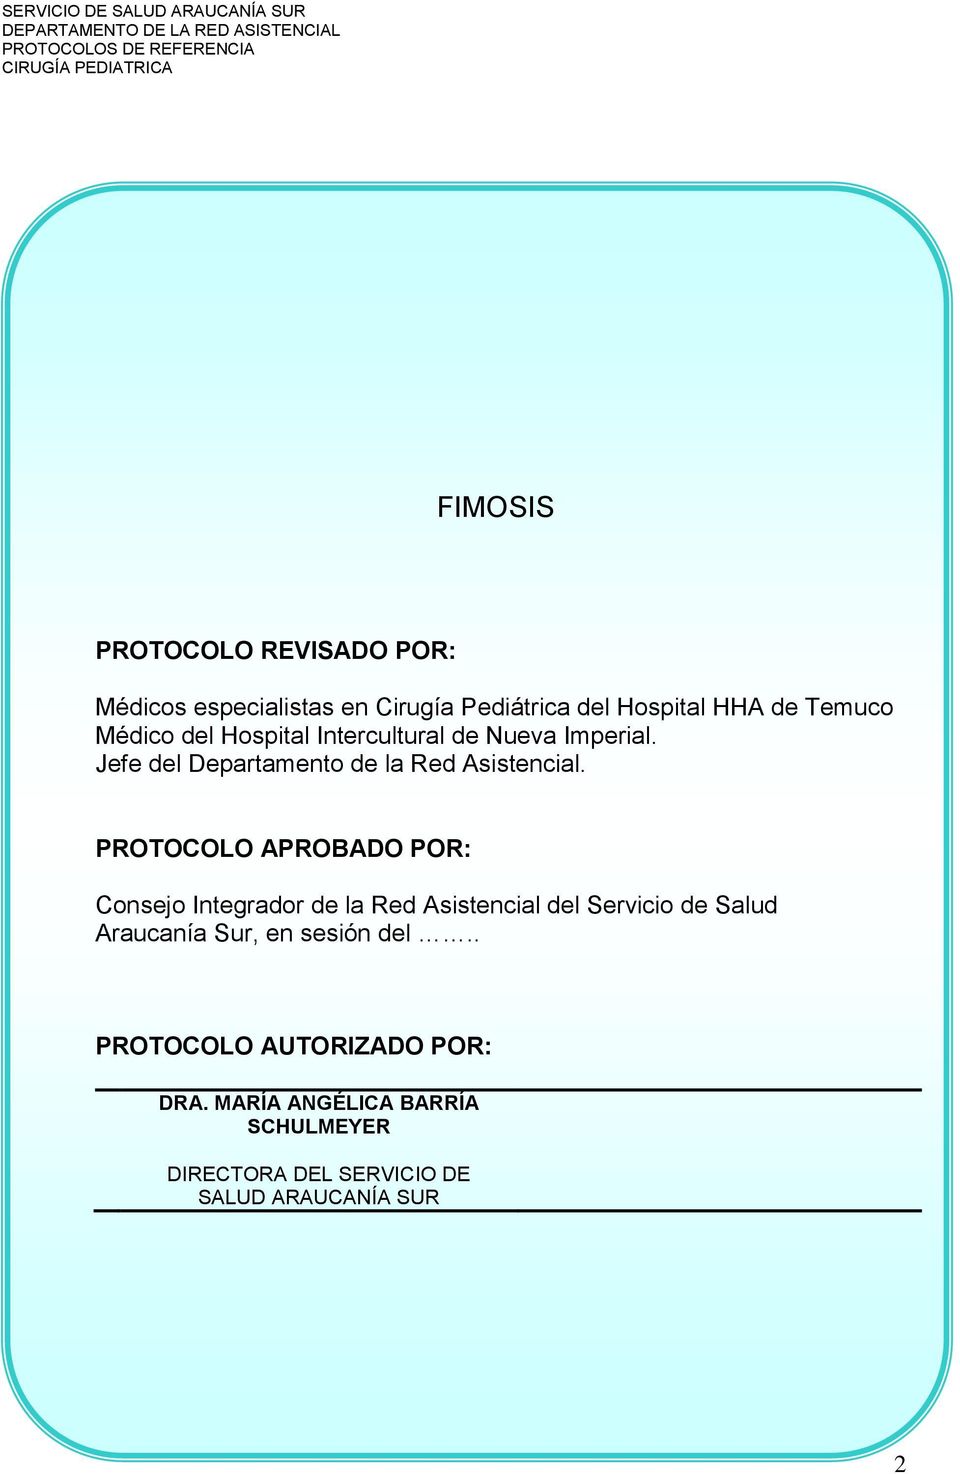 PROTOCOLO APROBADO POR: Consejo Integrador de la Red Asistencial del Servicio de Salud Araucanía Sur, en